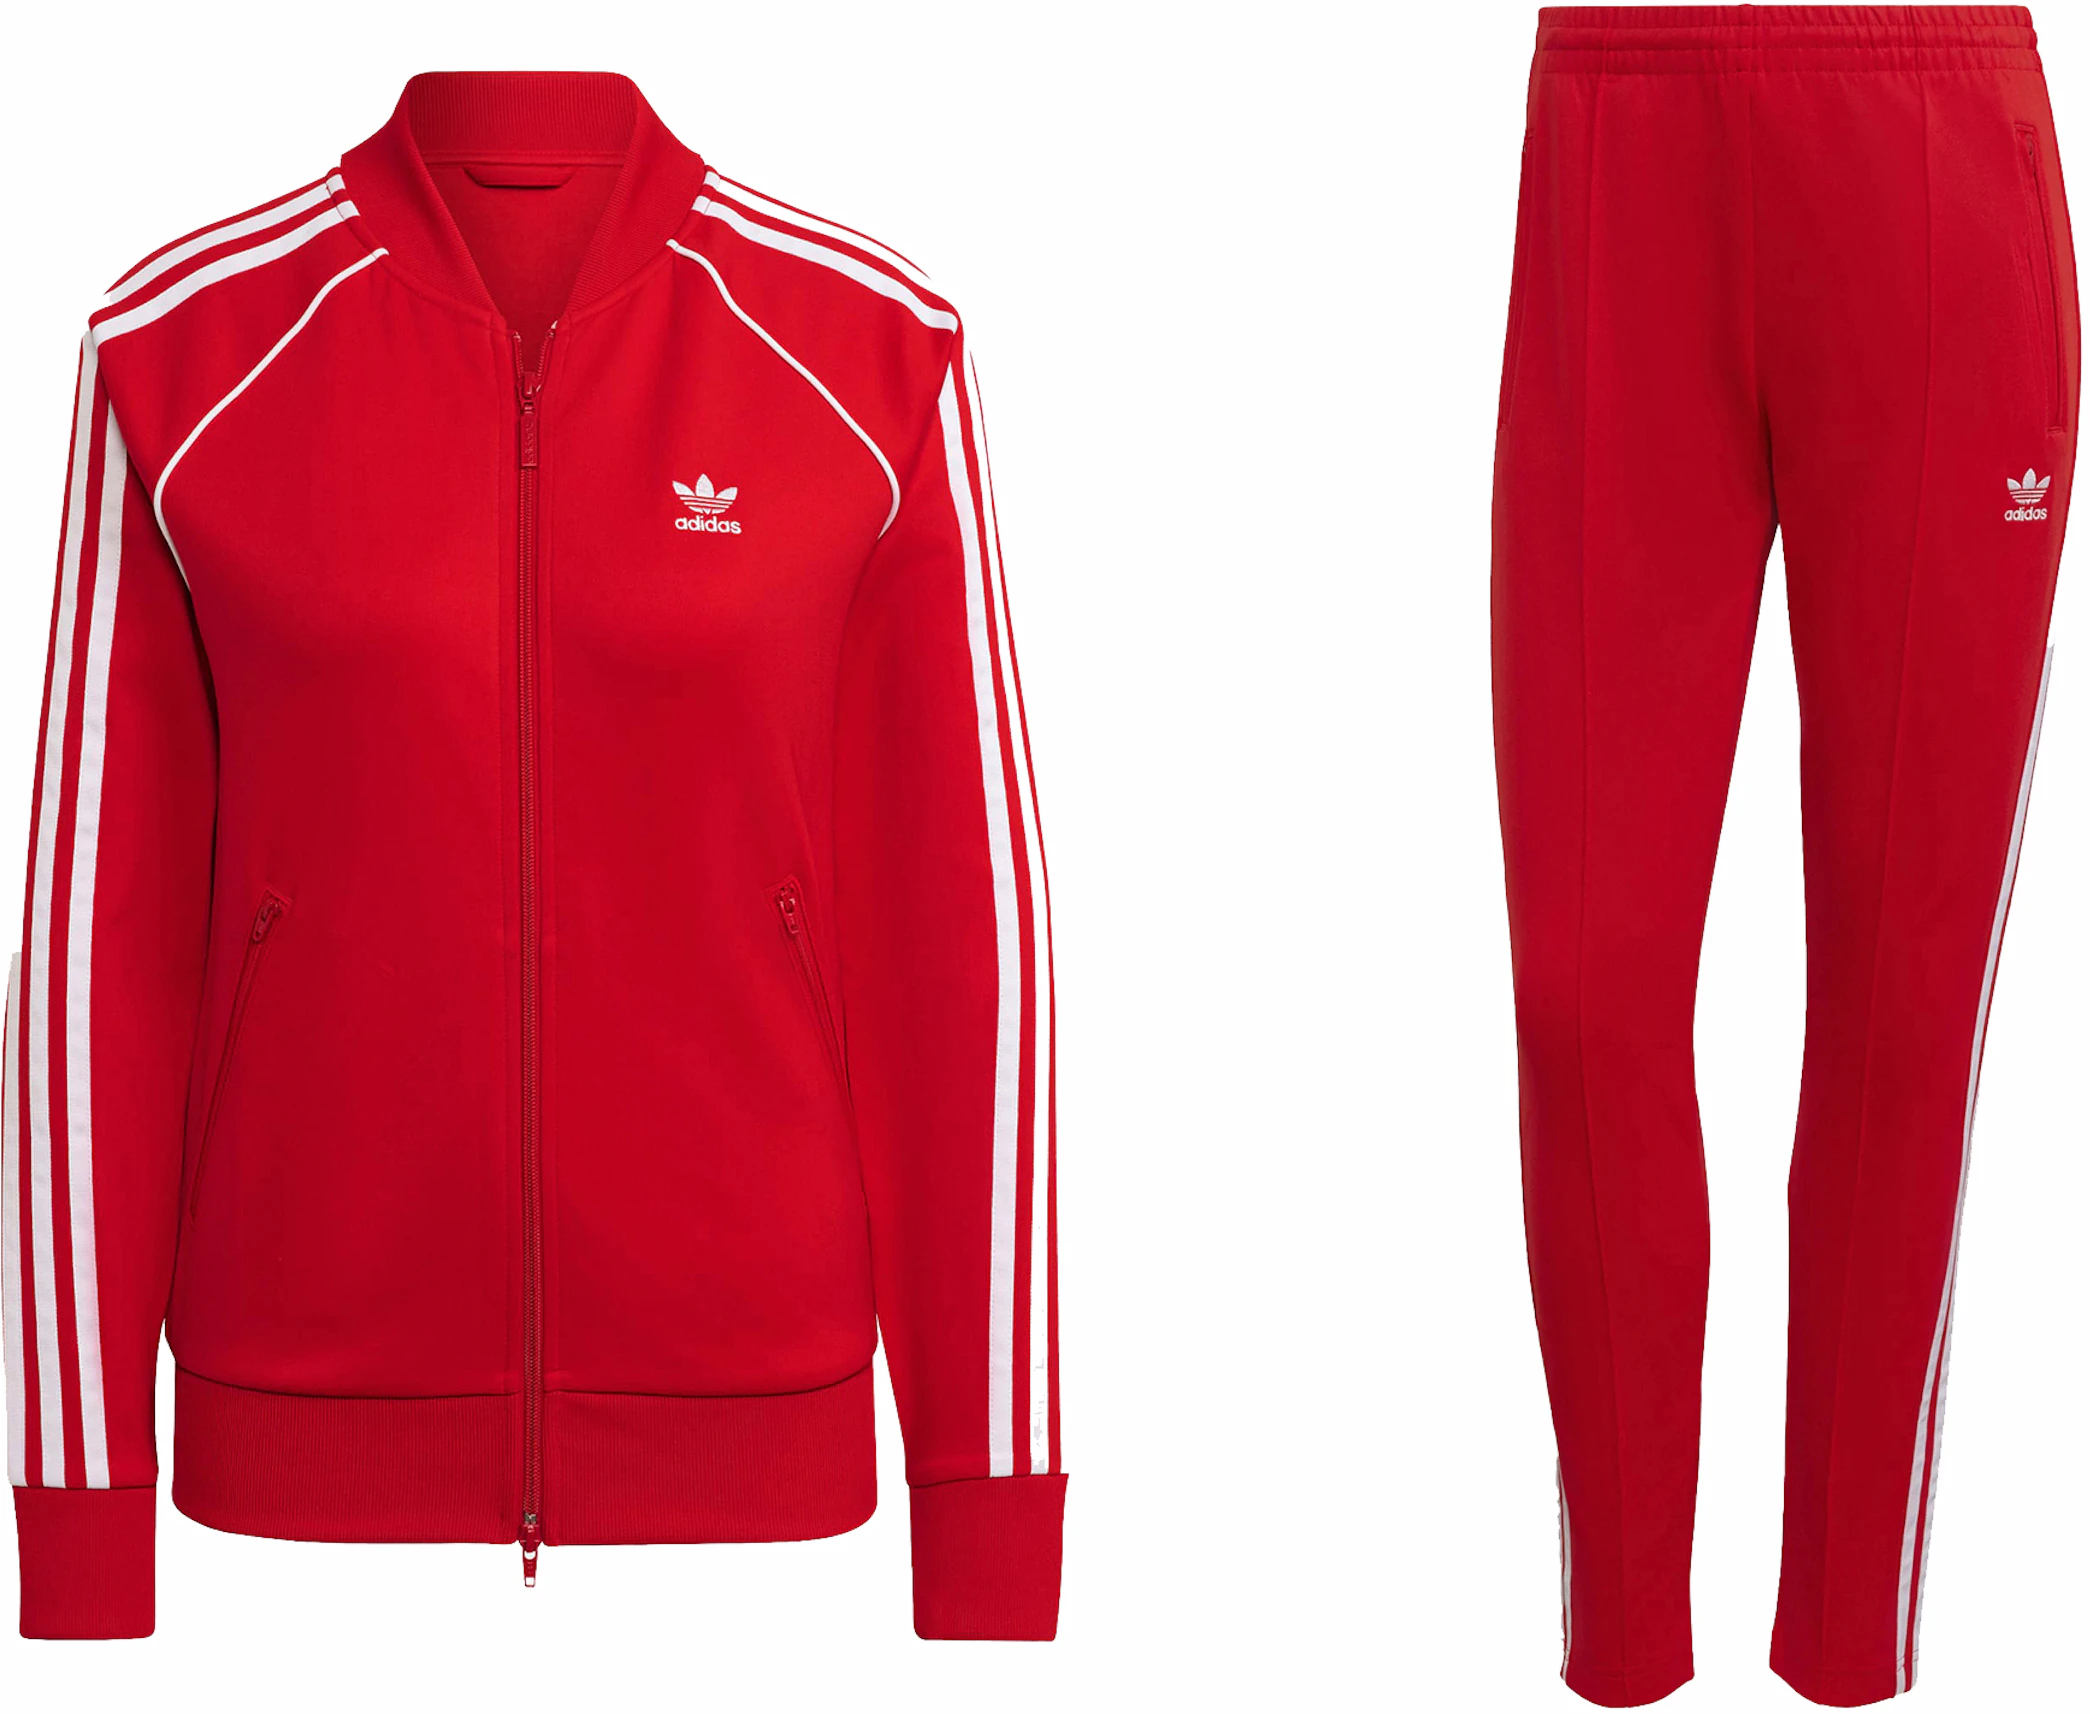 Pedir prestado Teoría de la relatividad Janice adidas Women's Primeblue SST Track Jacket & Pant Set Vivid Red - SS23 - ES